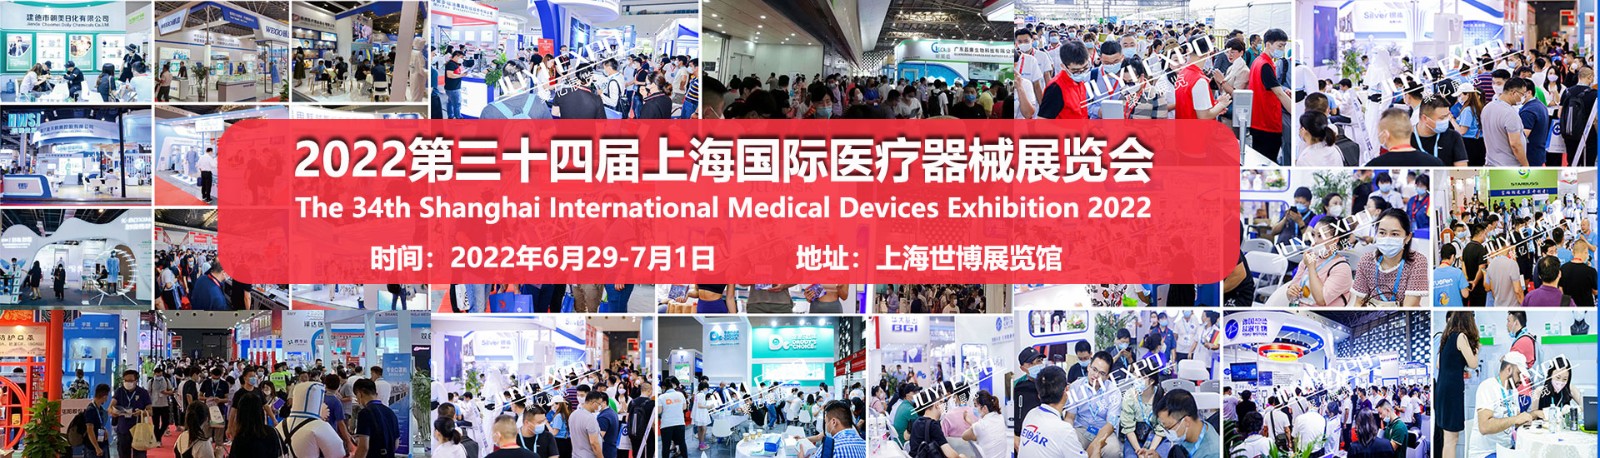 CMEH2022中国国际医疗器械展览会 -上海站、北京站